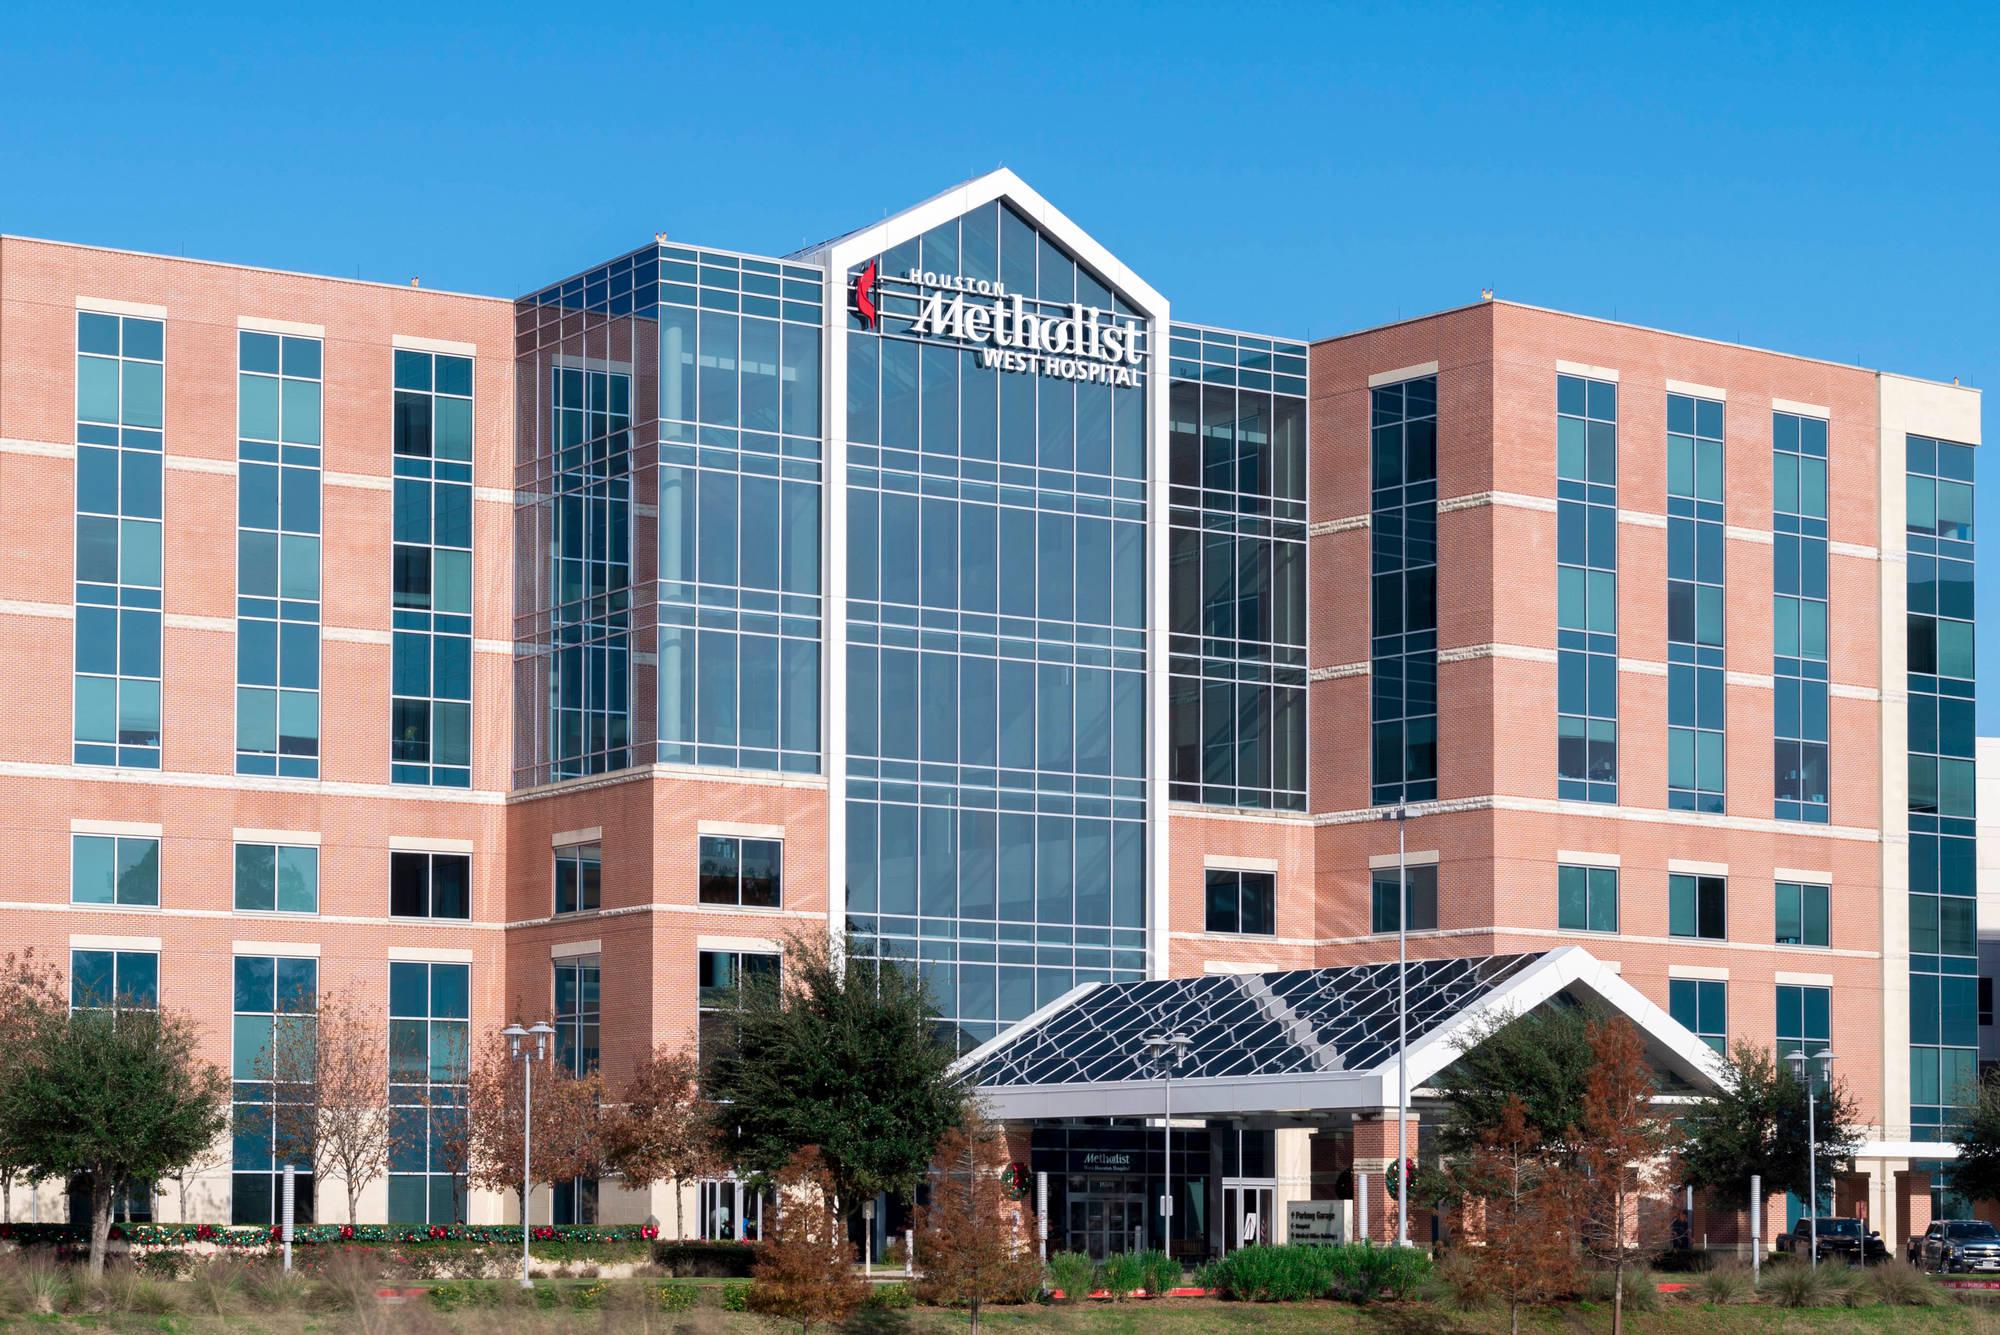 What kind of hospital is Houston Methodist?